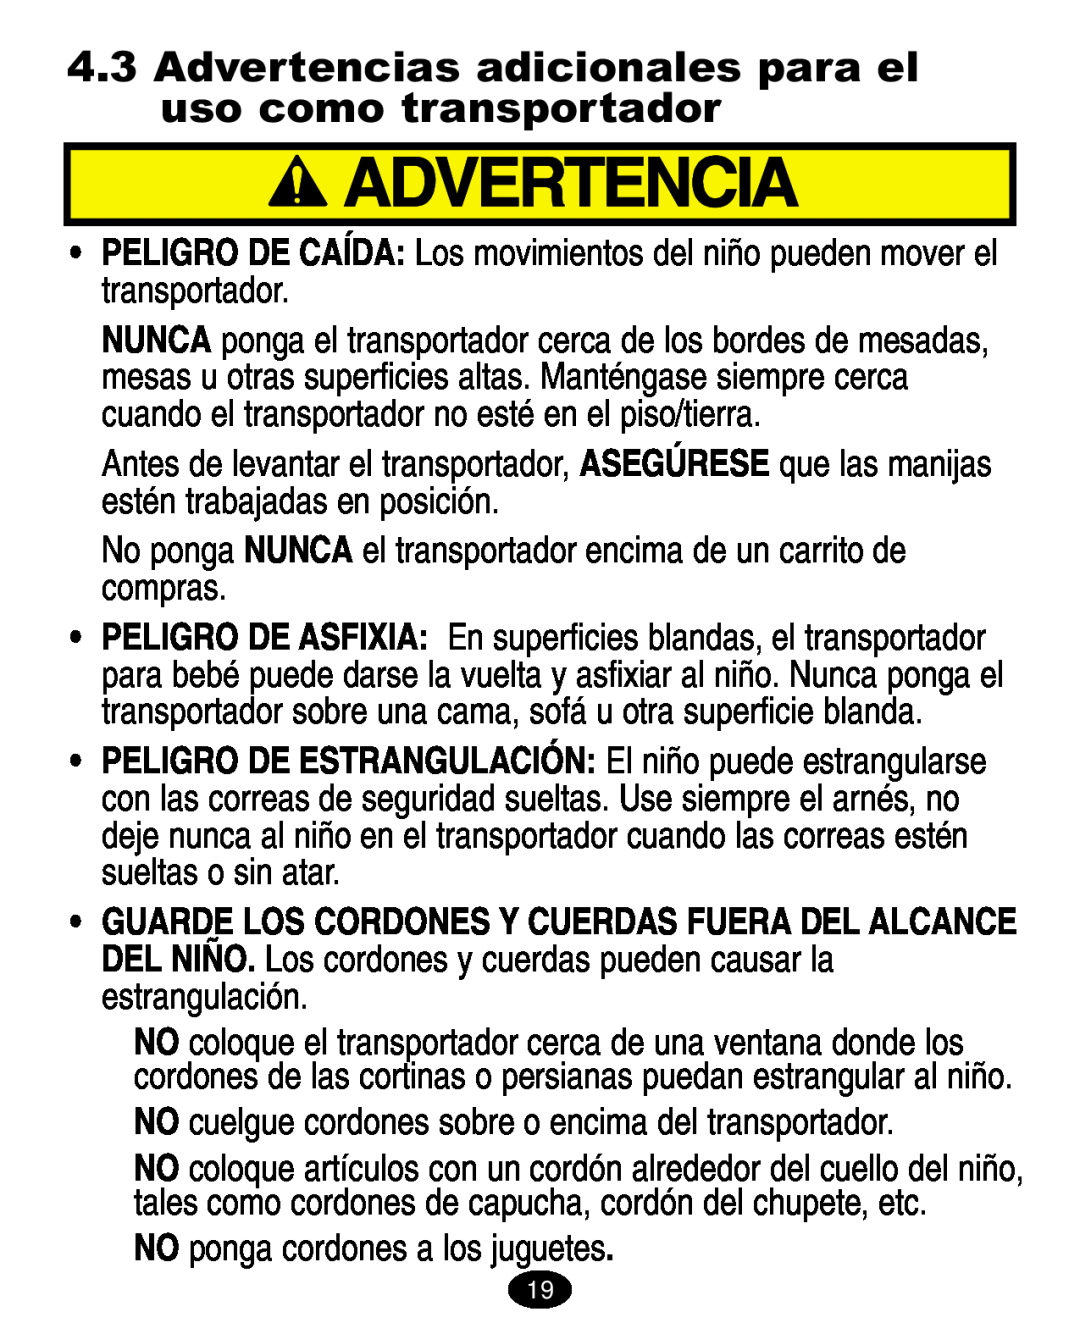 Graco ISPA005AA manual Advertencias adicionales para el uso como transportador, NO ponga cordones a los juguetes 